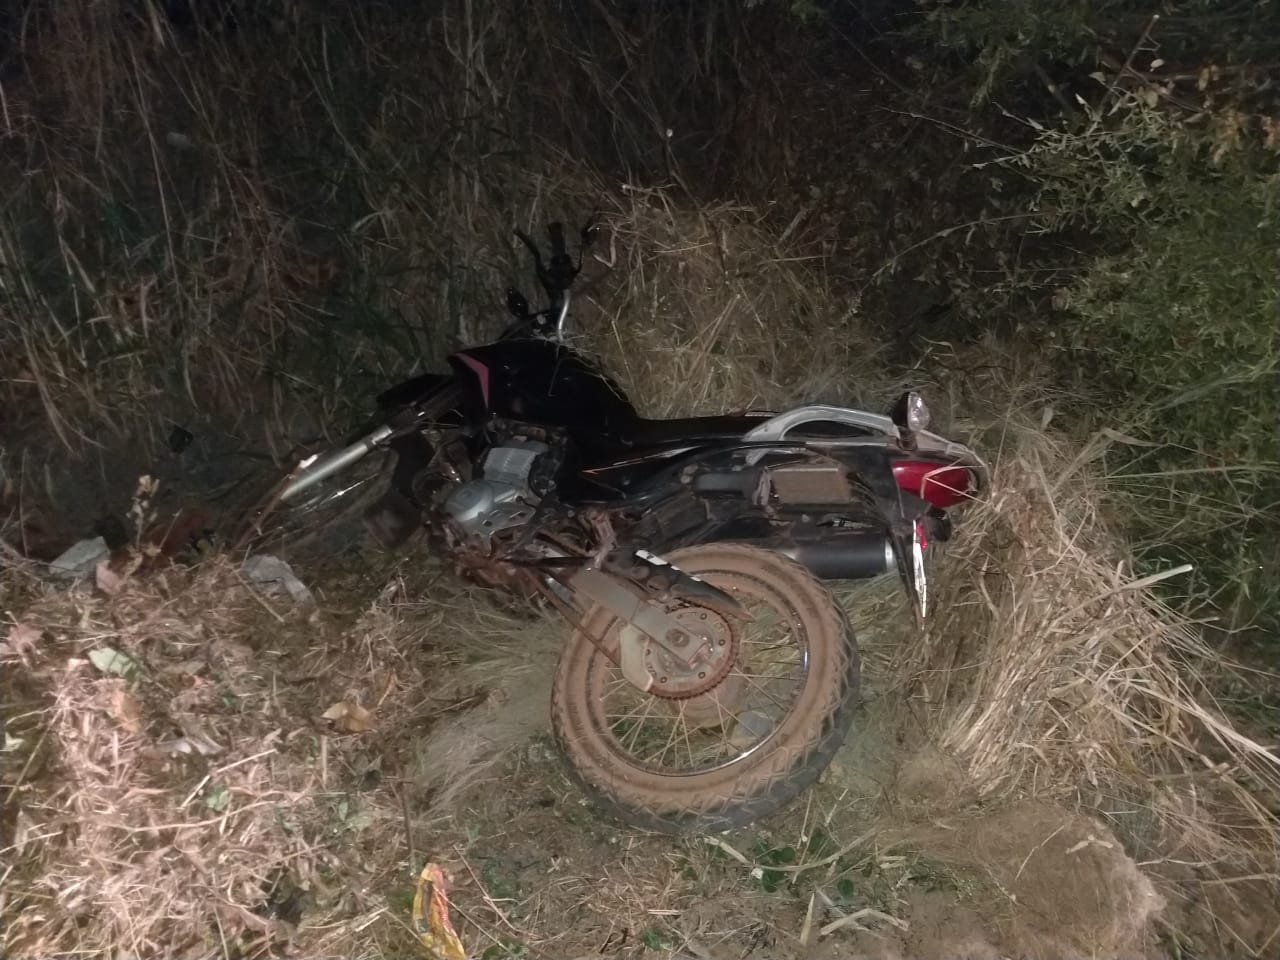 Motocicleta é recuperada na Vila Palitolandia